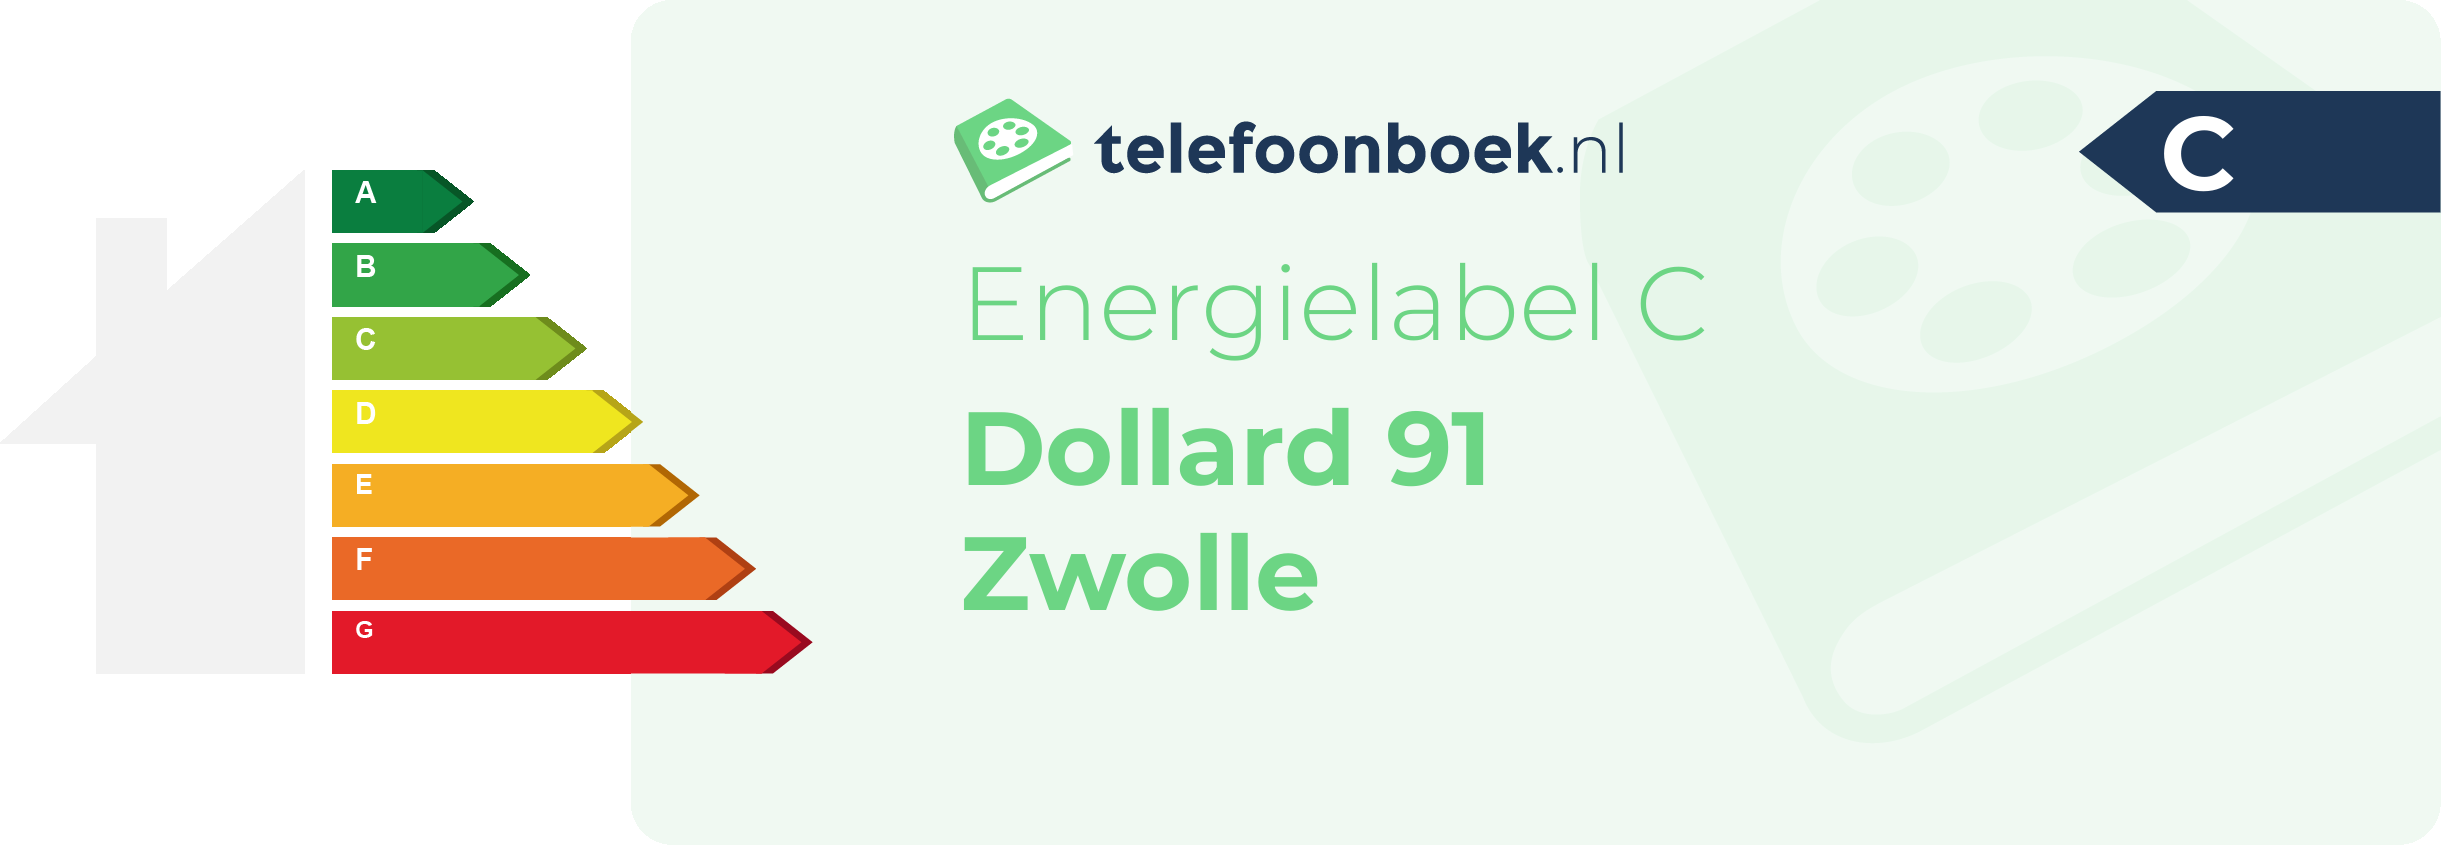 Energielabel Dollard 91 Zwolle